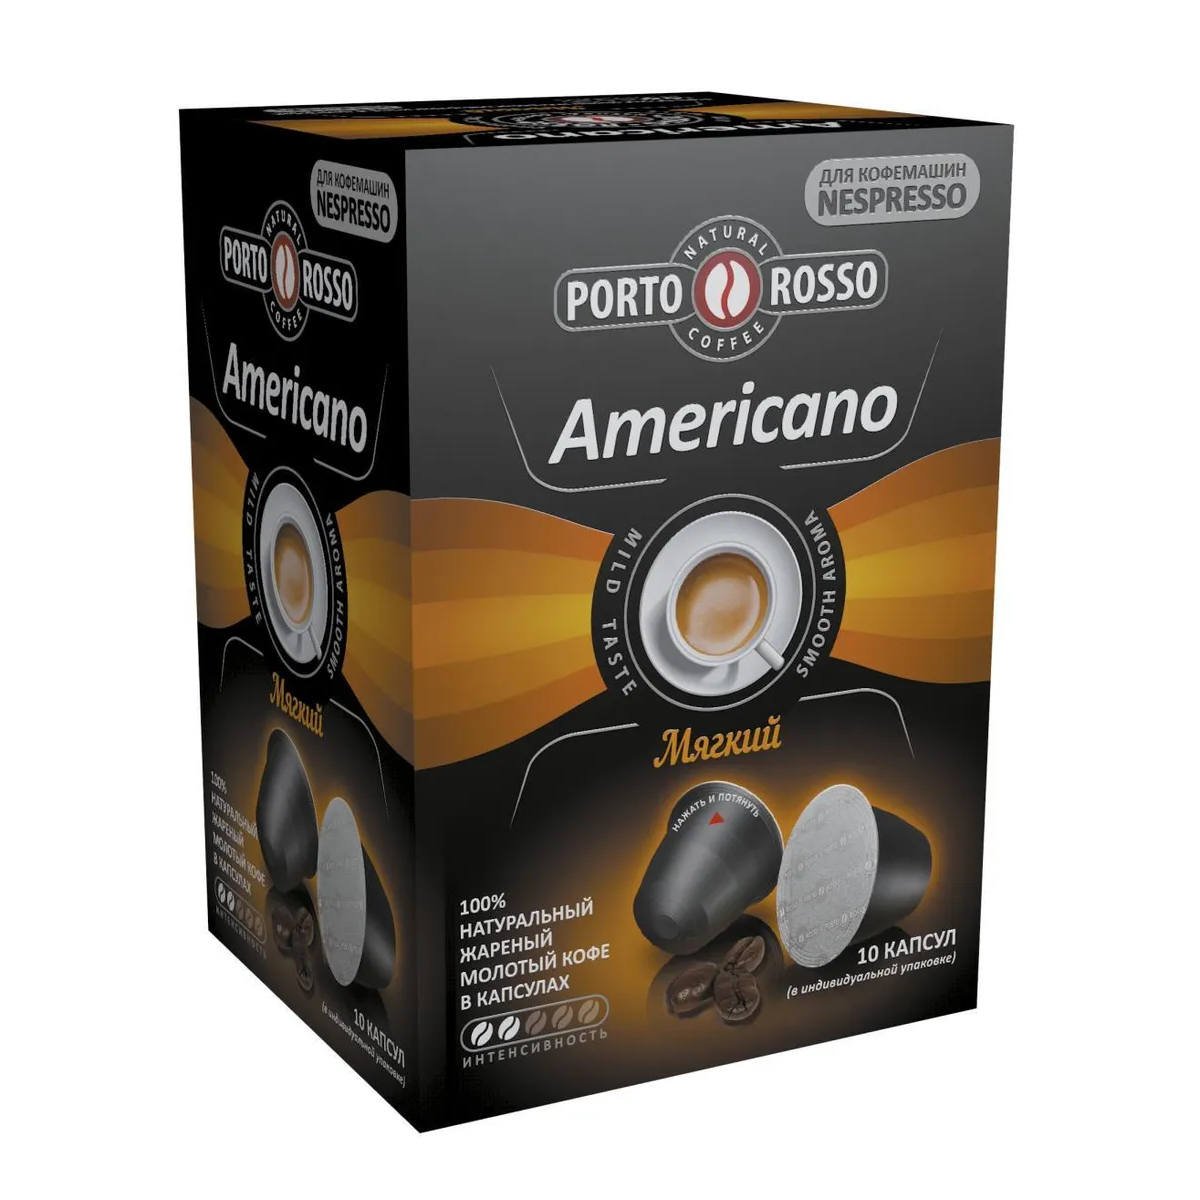 Кофе в капсулах Porto Rosso Americano Мягкий, 10х5 г кофе растворимый porto rosso originale 90 г